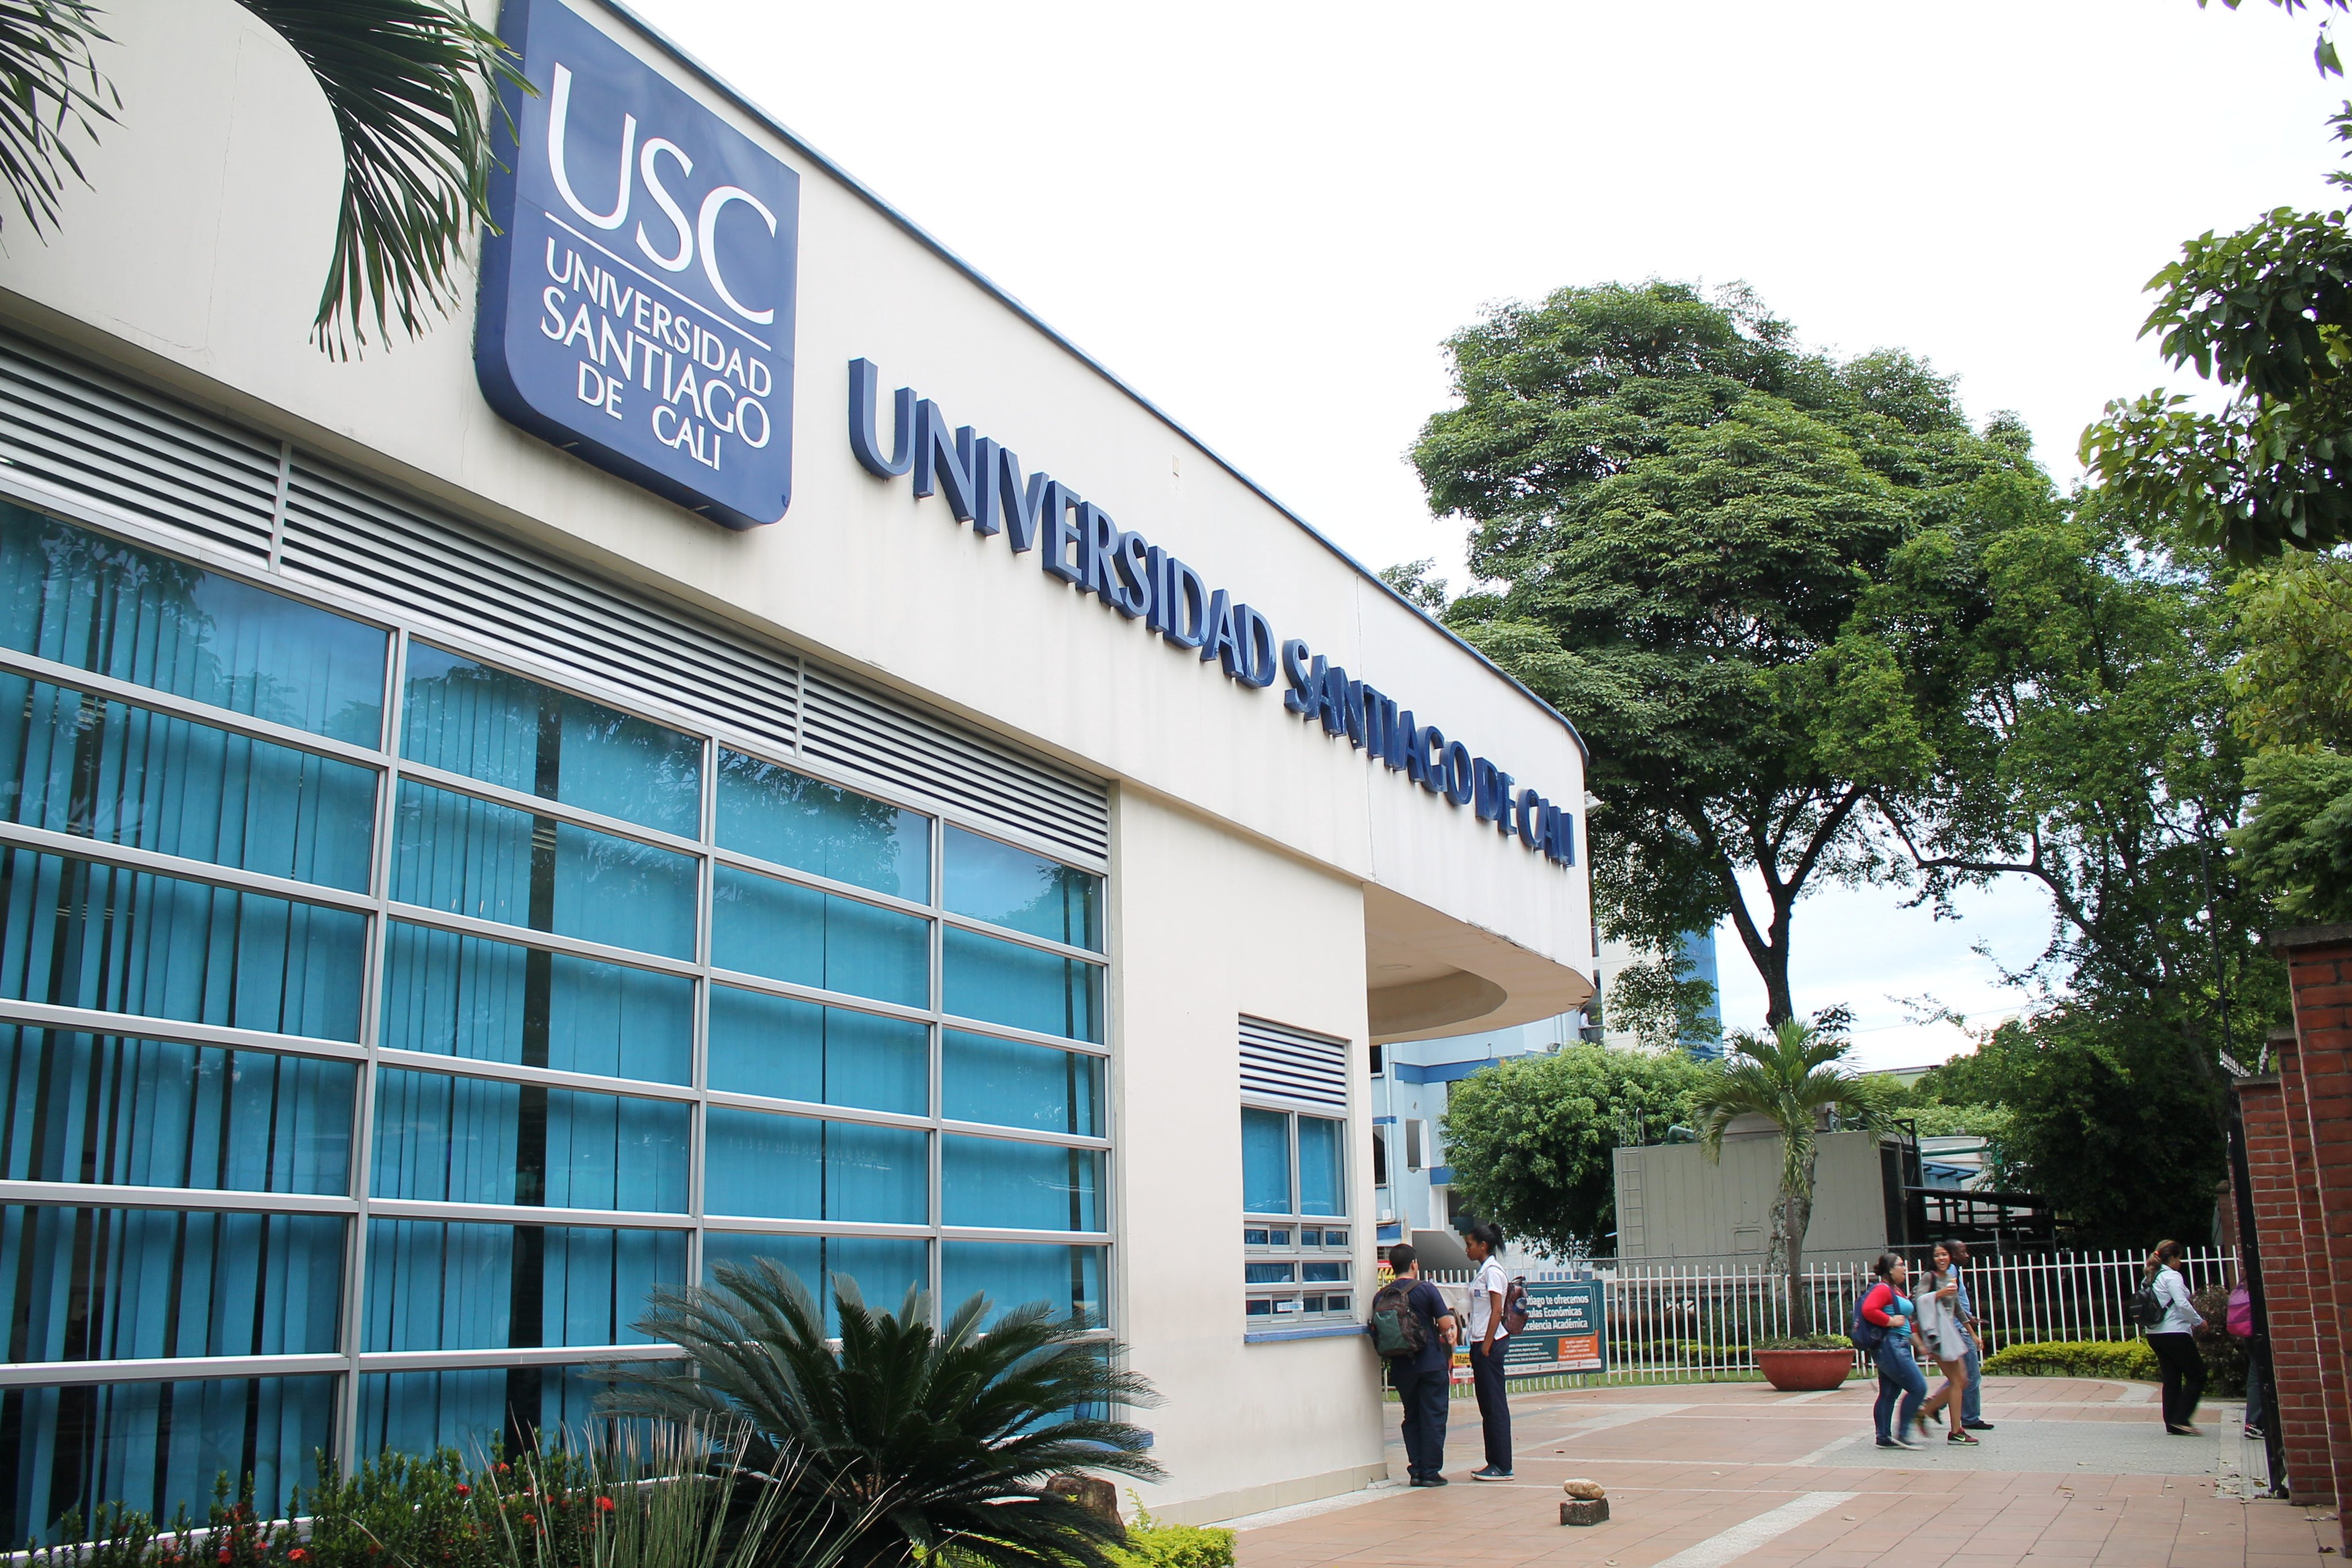 Universidad Santiago de Cali on X: "¿Sabías qué la Universidad Santiago de  Cali es una de las instituciones más asequibles del suroccidente  colombiano? Esto es gracias a su política de inclusión social,